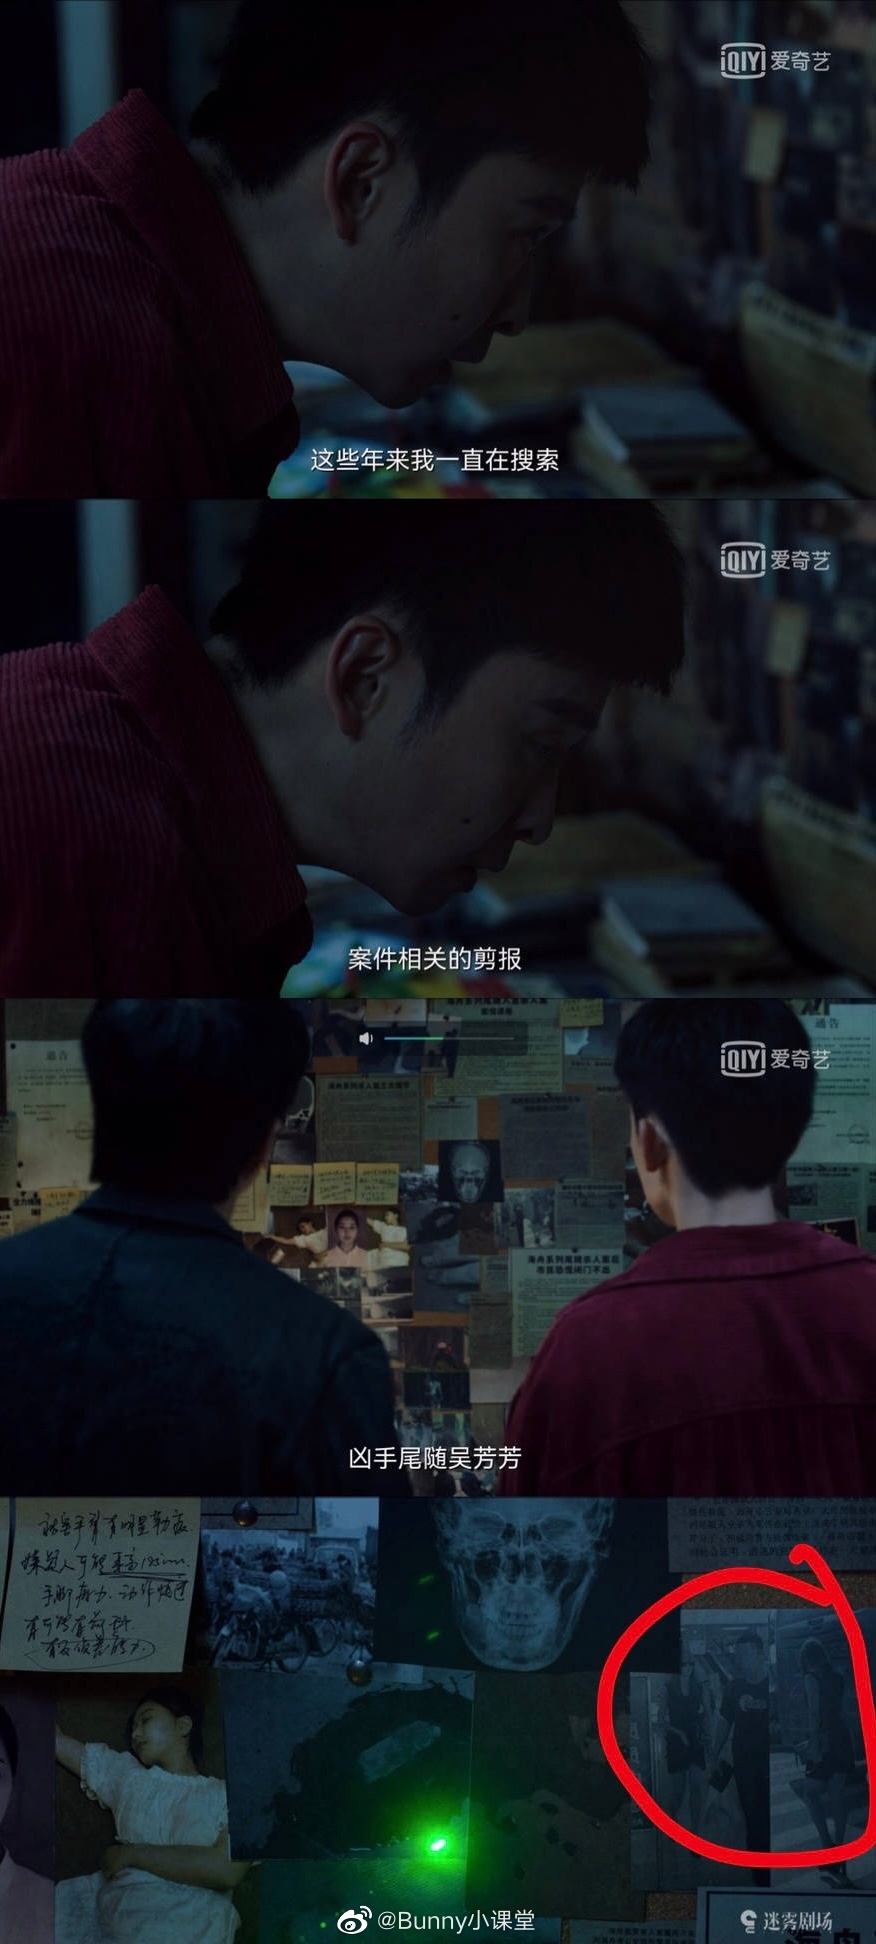 'Ai là hung thủ' bị gắn mác 'cọ nhiệt' khi tự ý sử dụng hình ảnh của Tống Thiến làm tư liệu nạn nhân bị sát hại trong phim